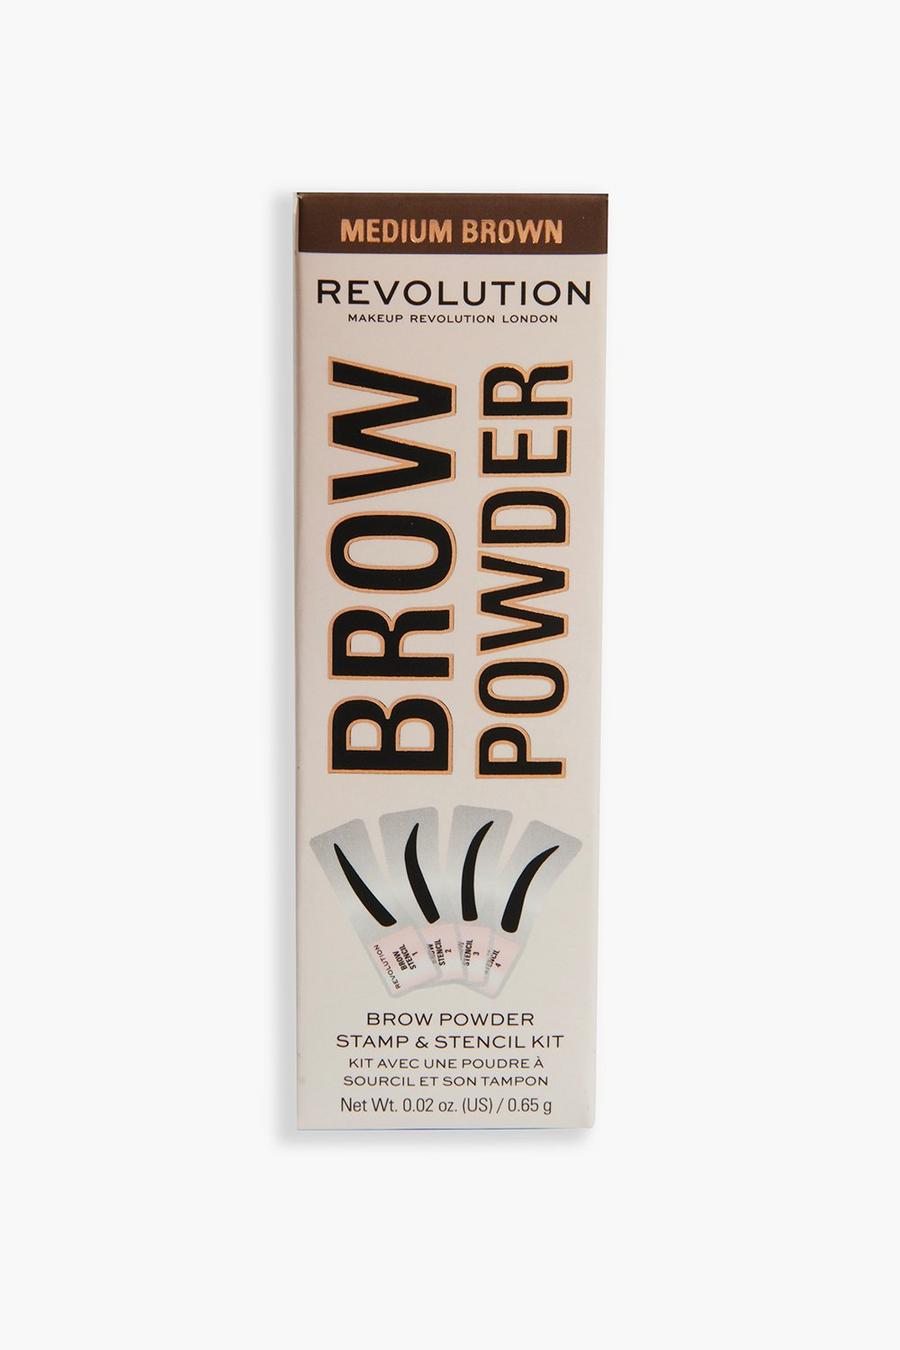 Medium brown braun Revolution Brow Powder Stamp & Stencil Kit 